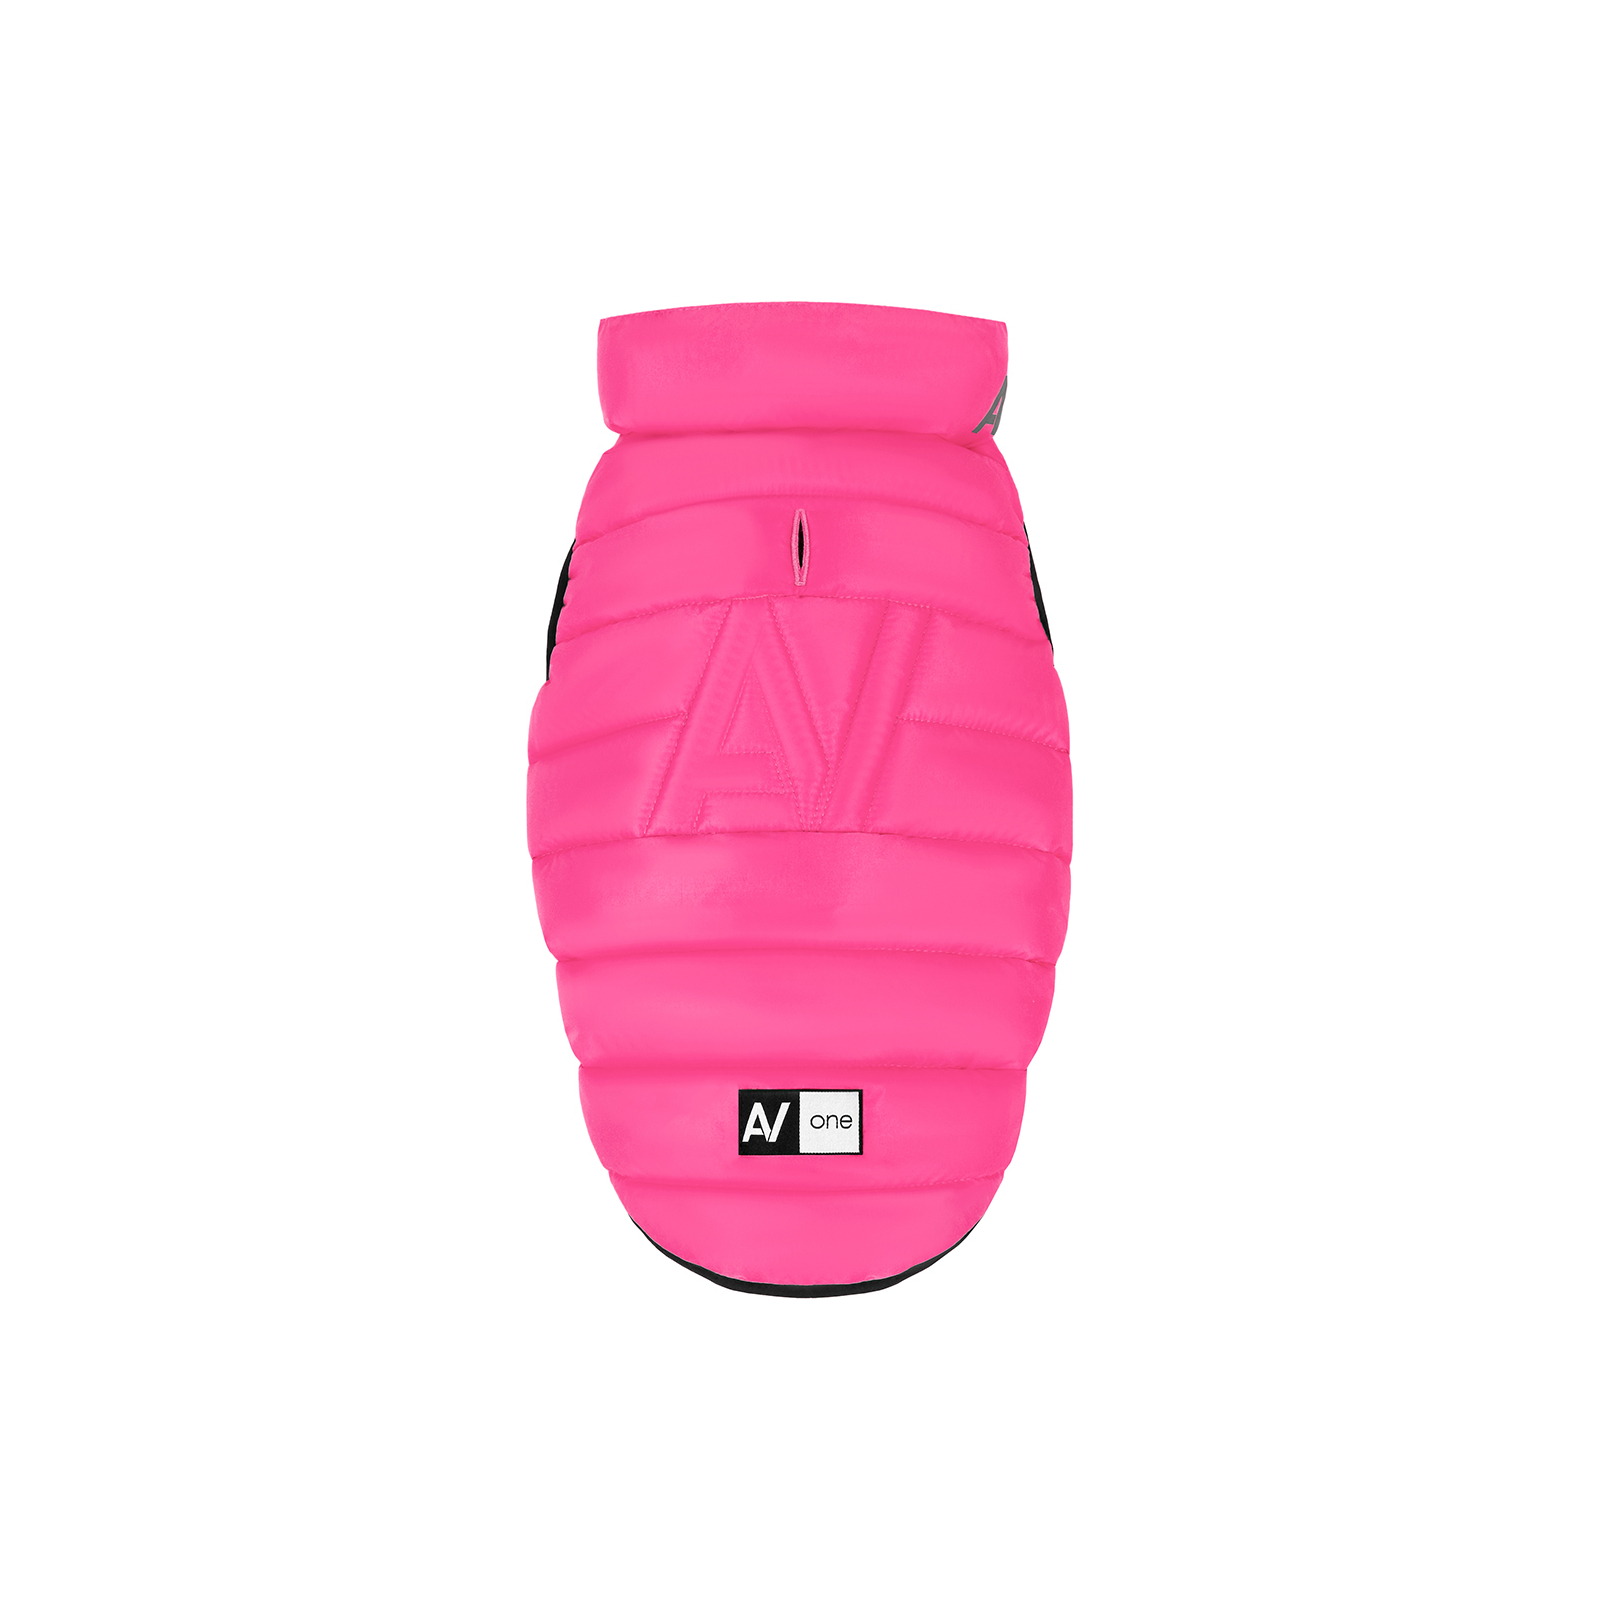 Курточка для животных Airy Vest One М 40 розовая (20677) изображение 2